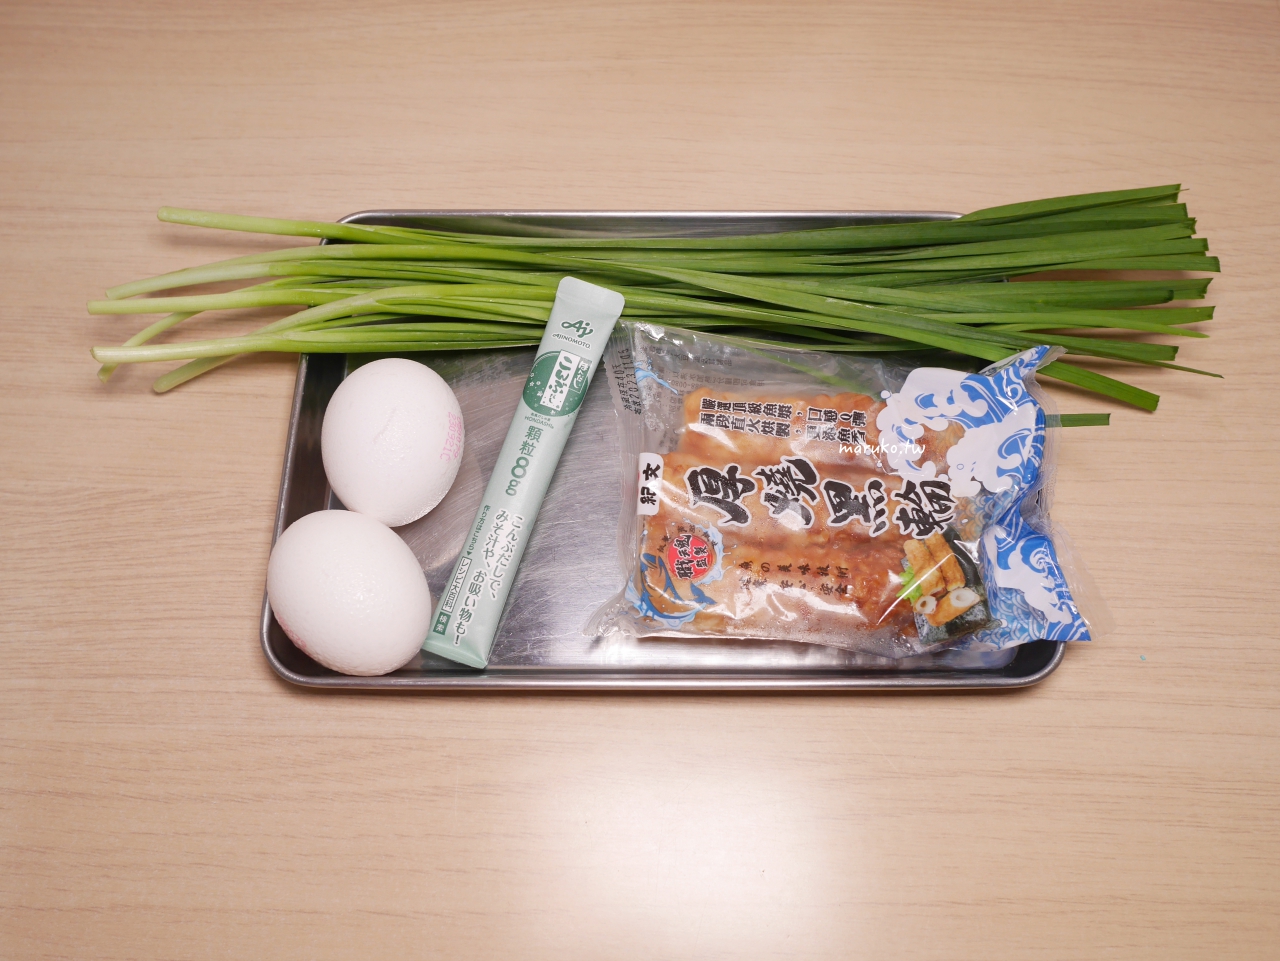 【食譜】韭菜炒蛋燴竹輪 一次三道菜，10分鐘晚餐系列馬上就開飯！ @Maruko與美食有個約會